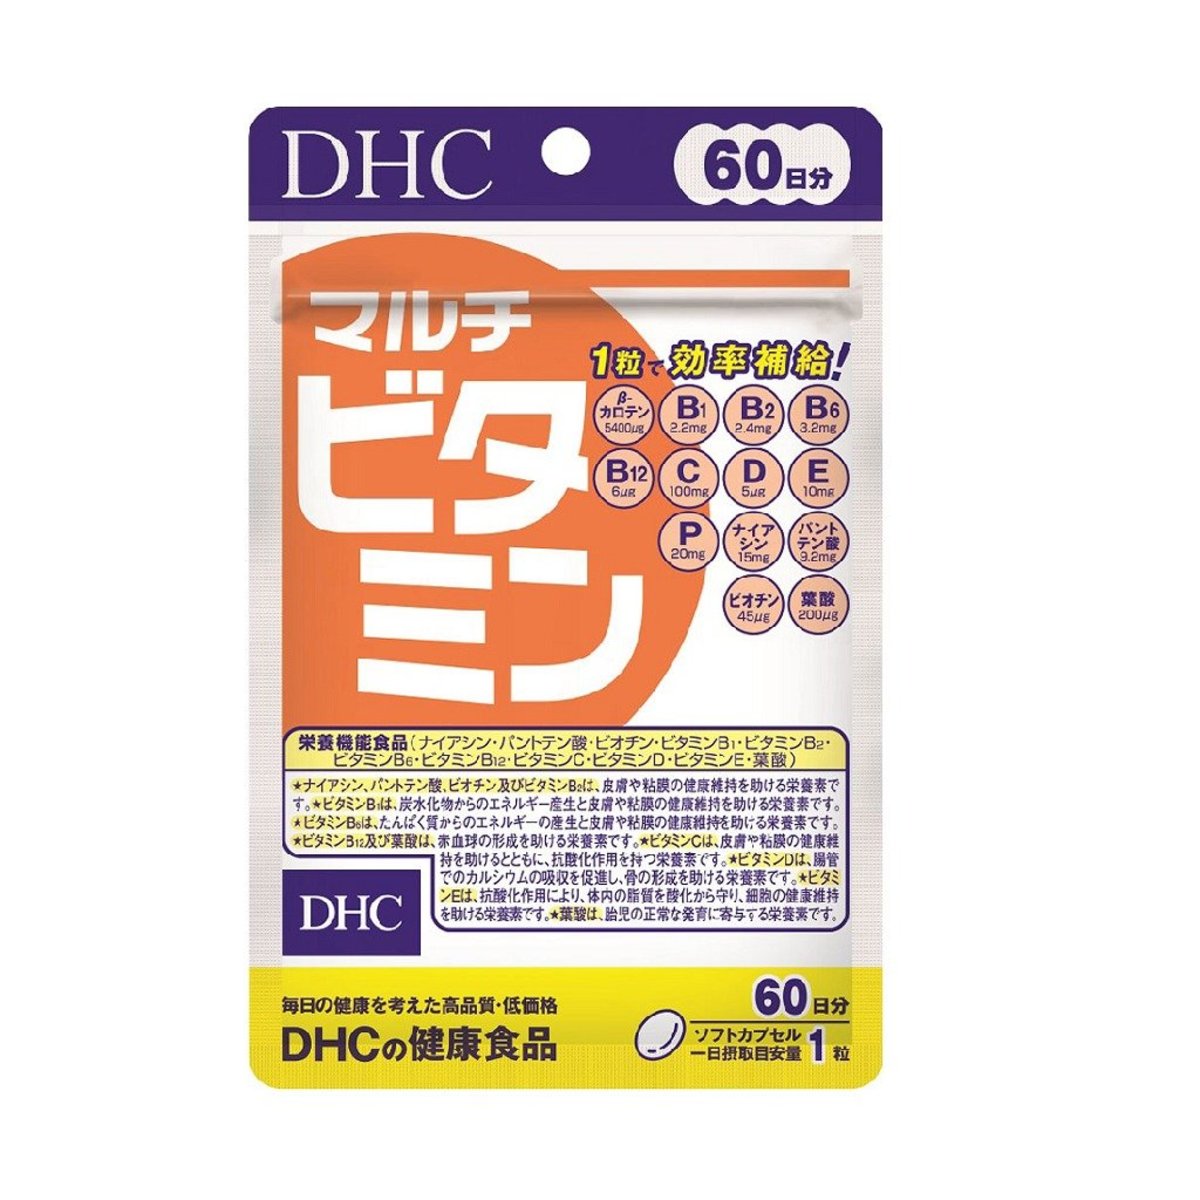 DHC- 綜合多種維他命補充食品 60粒 (60日)(平行進口)